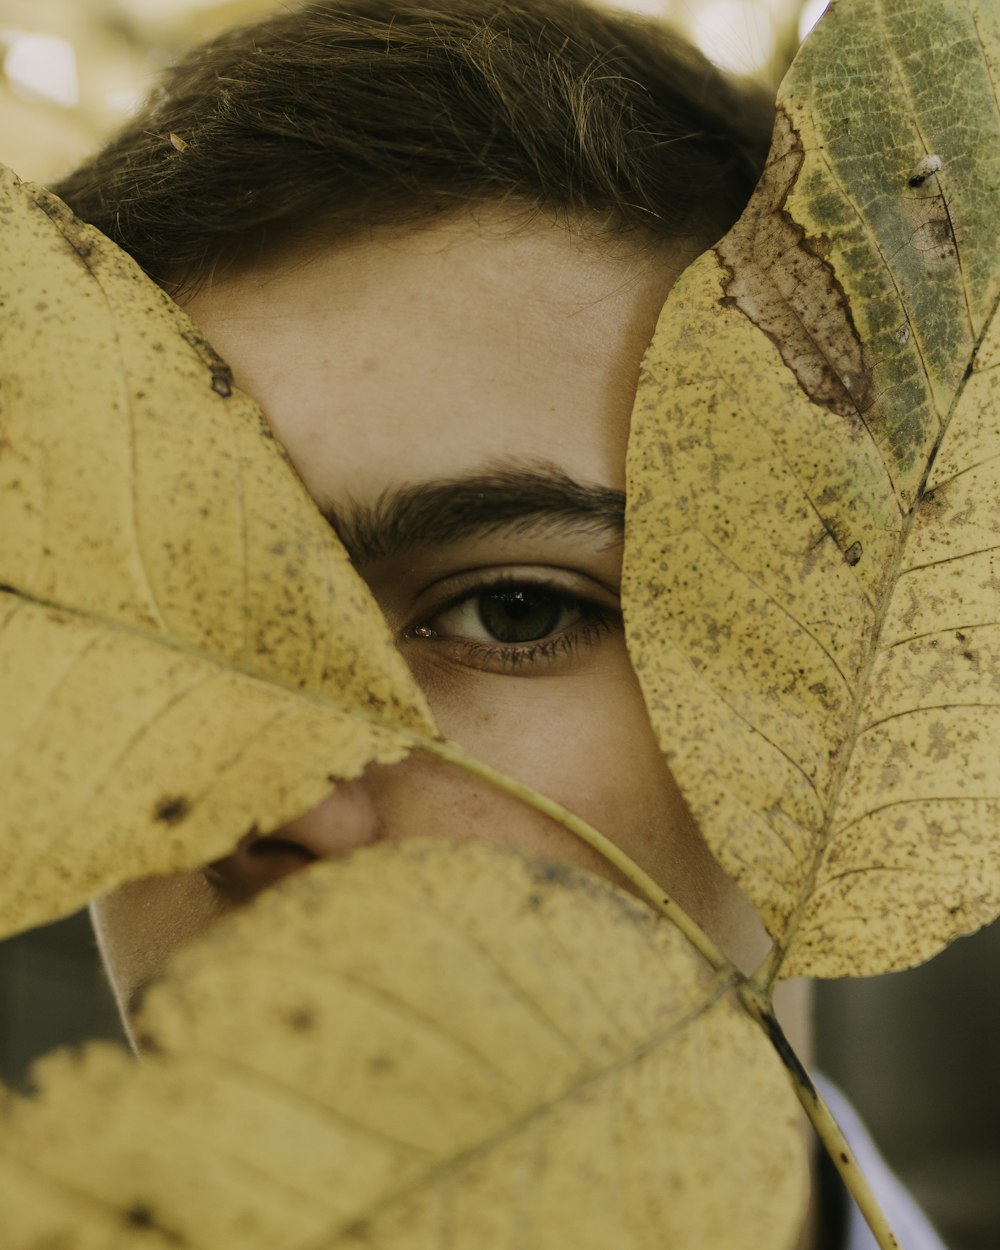 feuilles brunes sur le visage de la personne pendant la journée